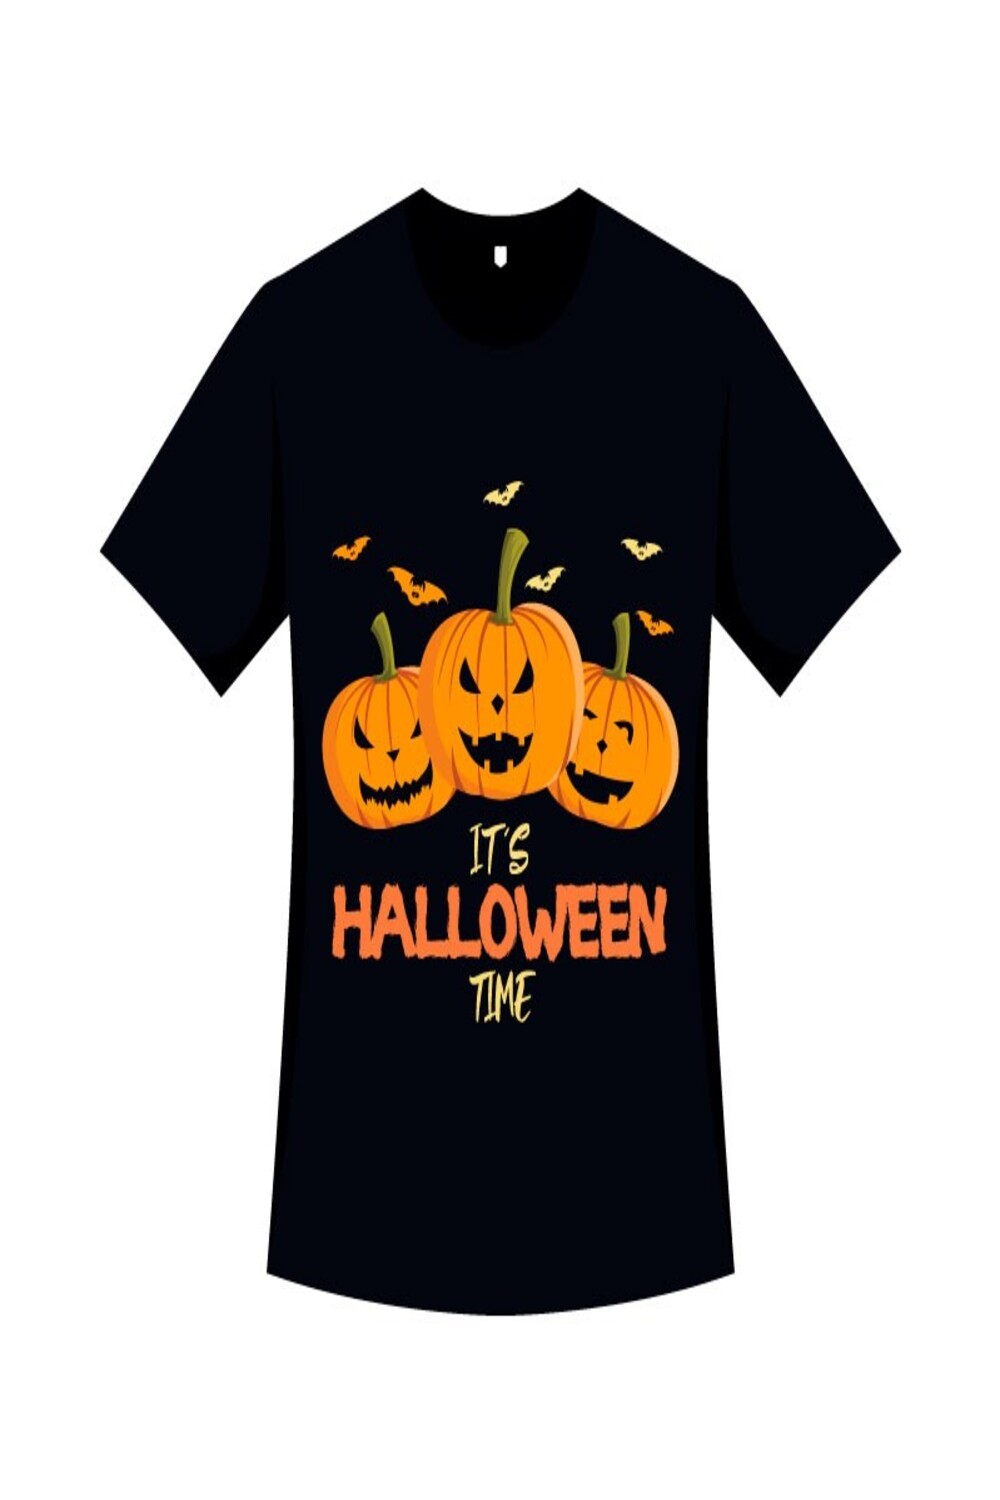 Halloween Pumpkin T-shirt Vector pinterest image.